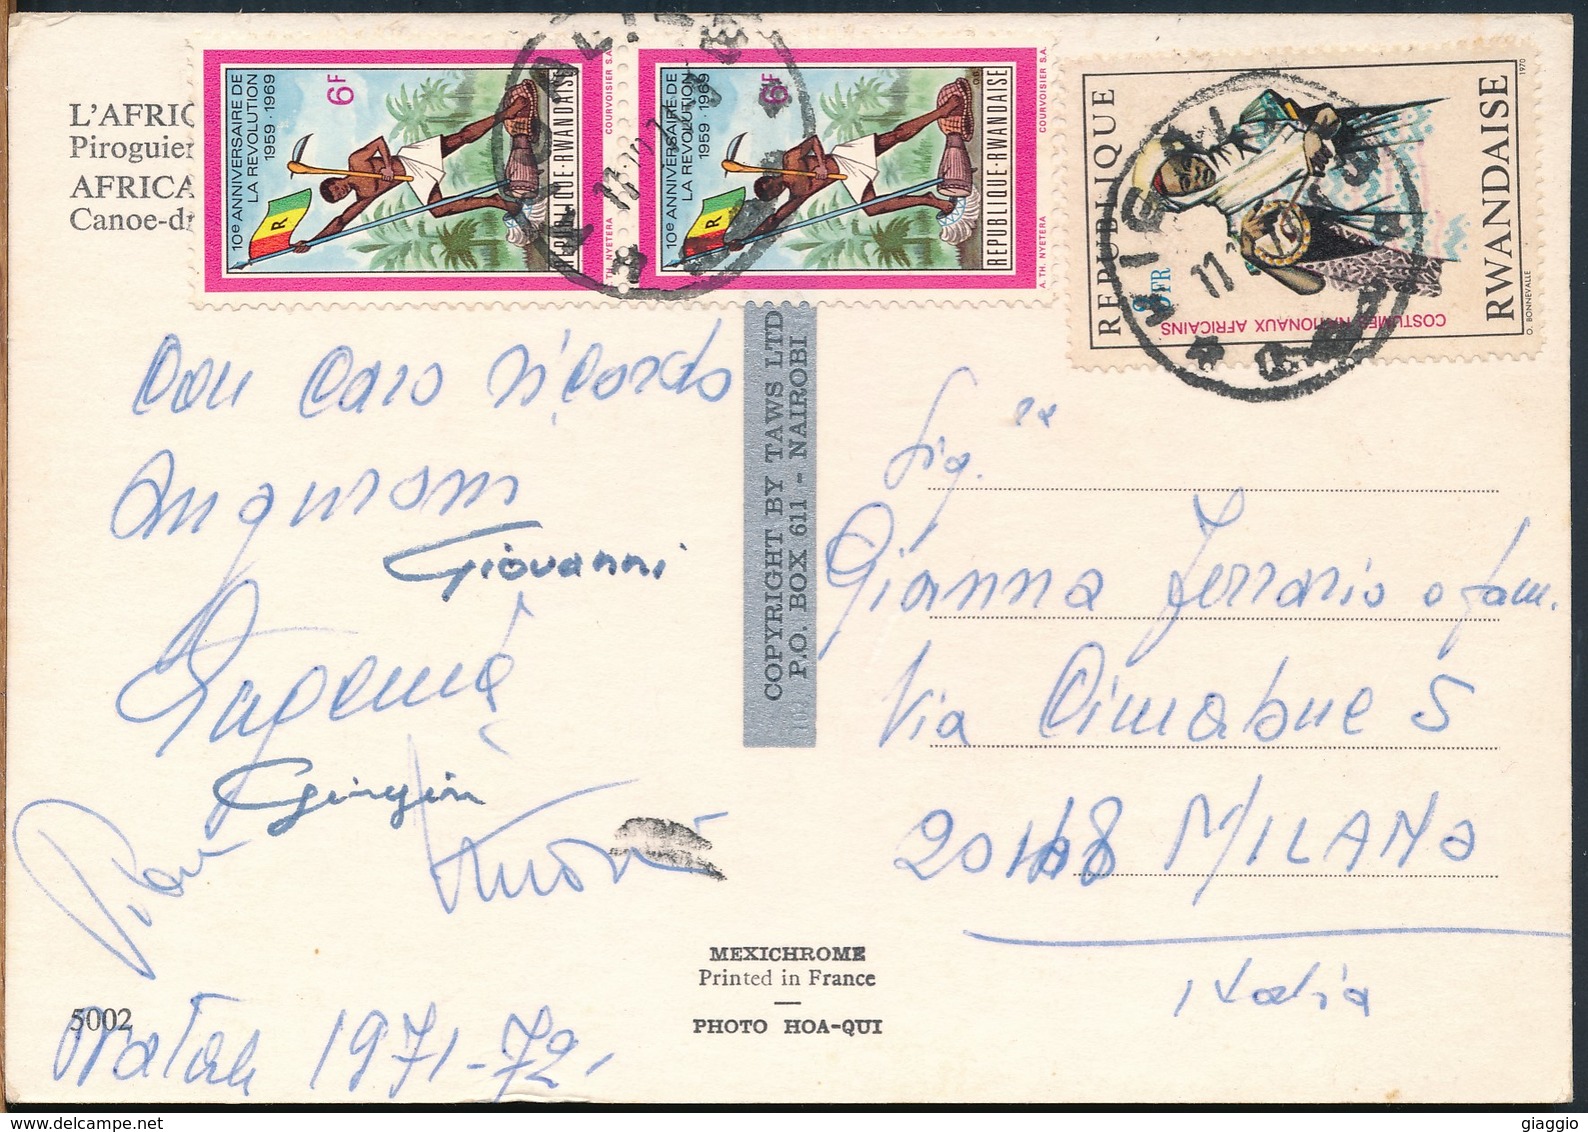 °°° 19003 - RWANDA - CANOE - 1971 With Stamps °°° - Rwanda